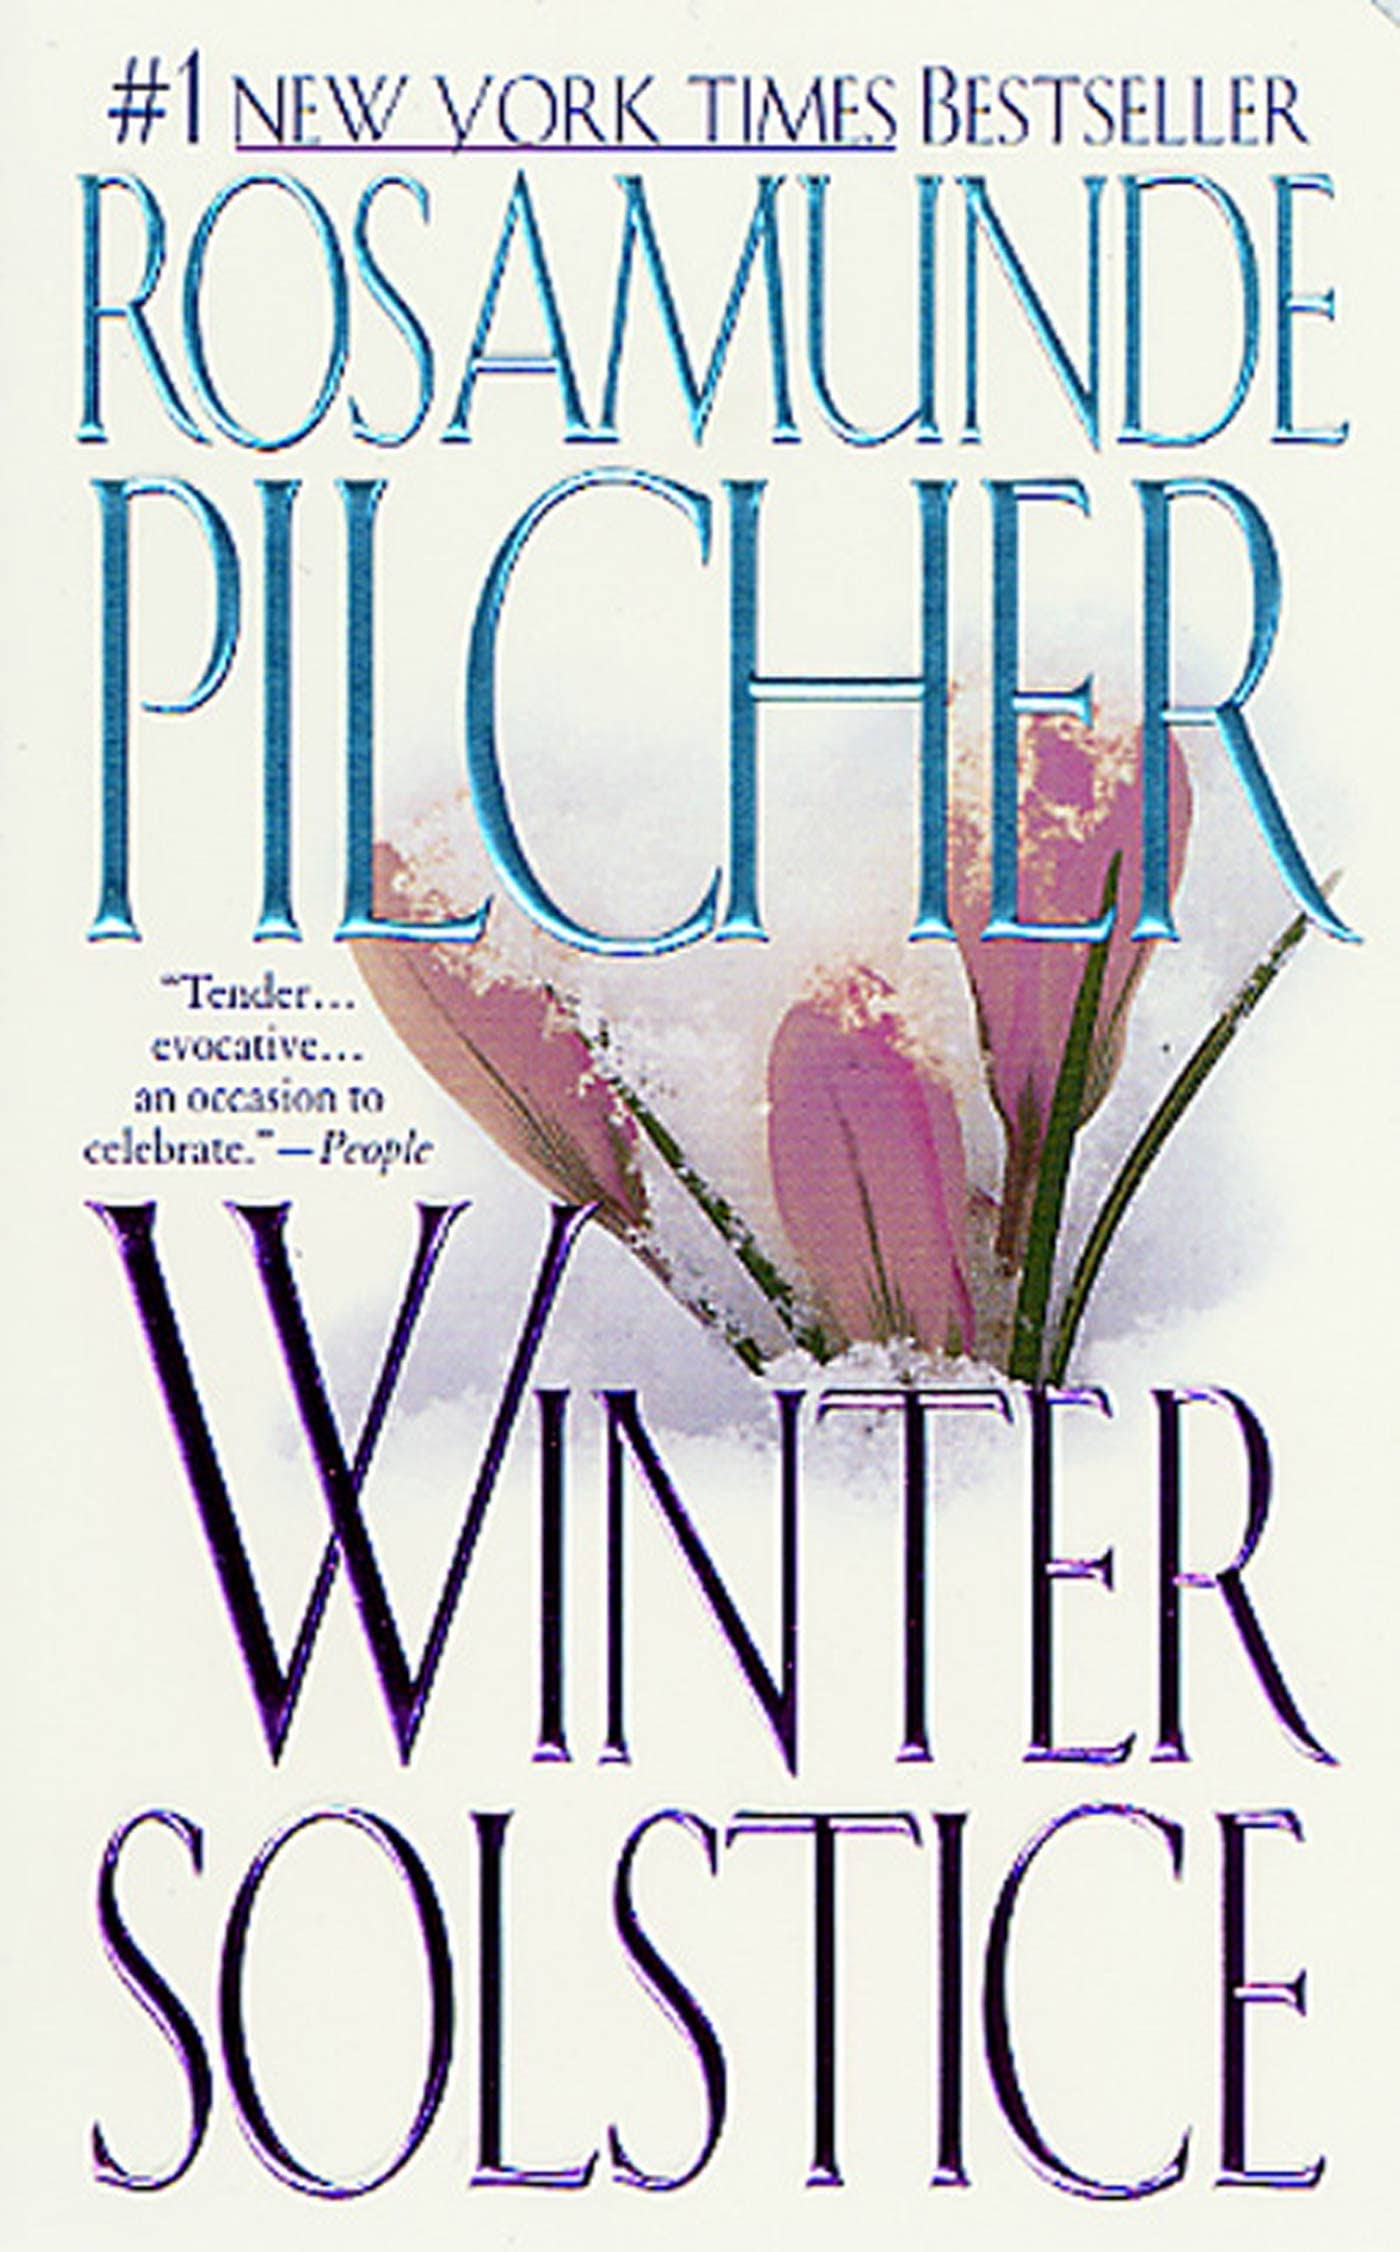 Winter Solstice [Book]